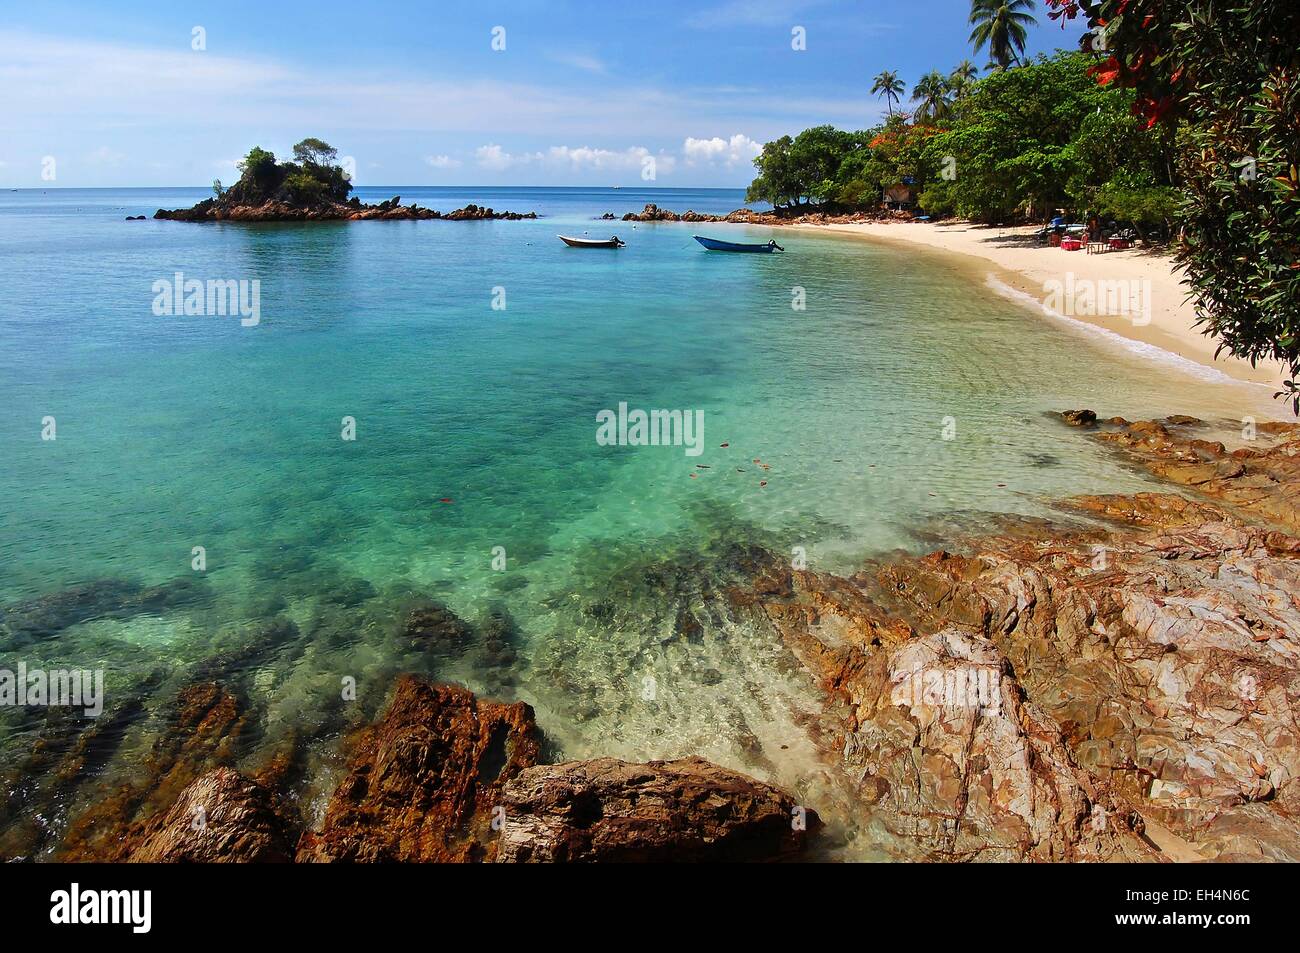 Malaysia, Terengganu, turquoise water at Kapas island Stock Photo